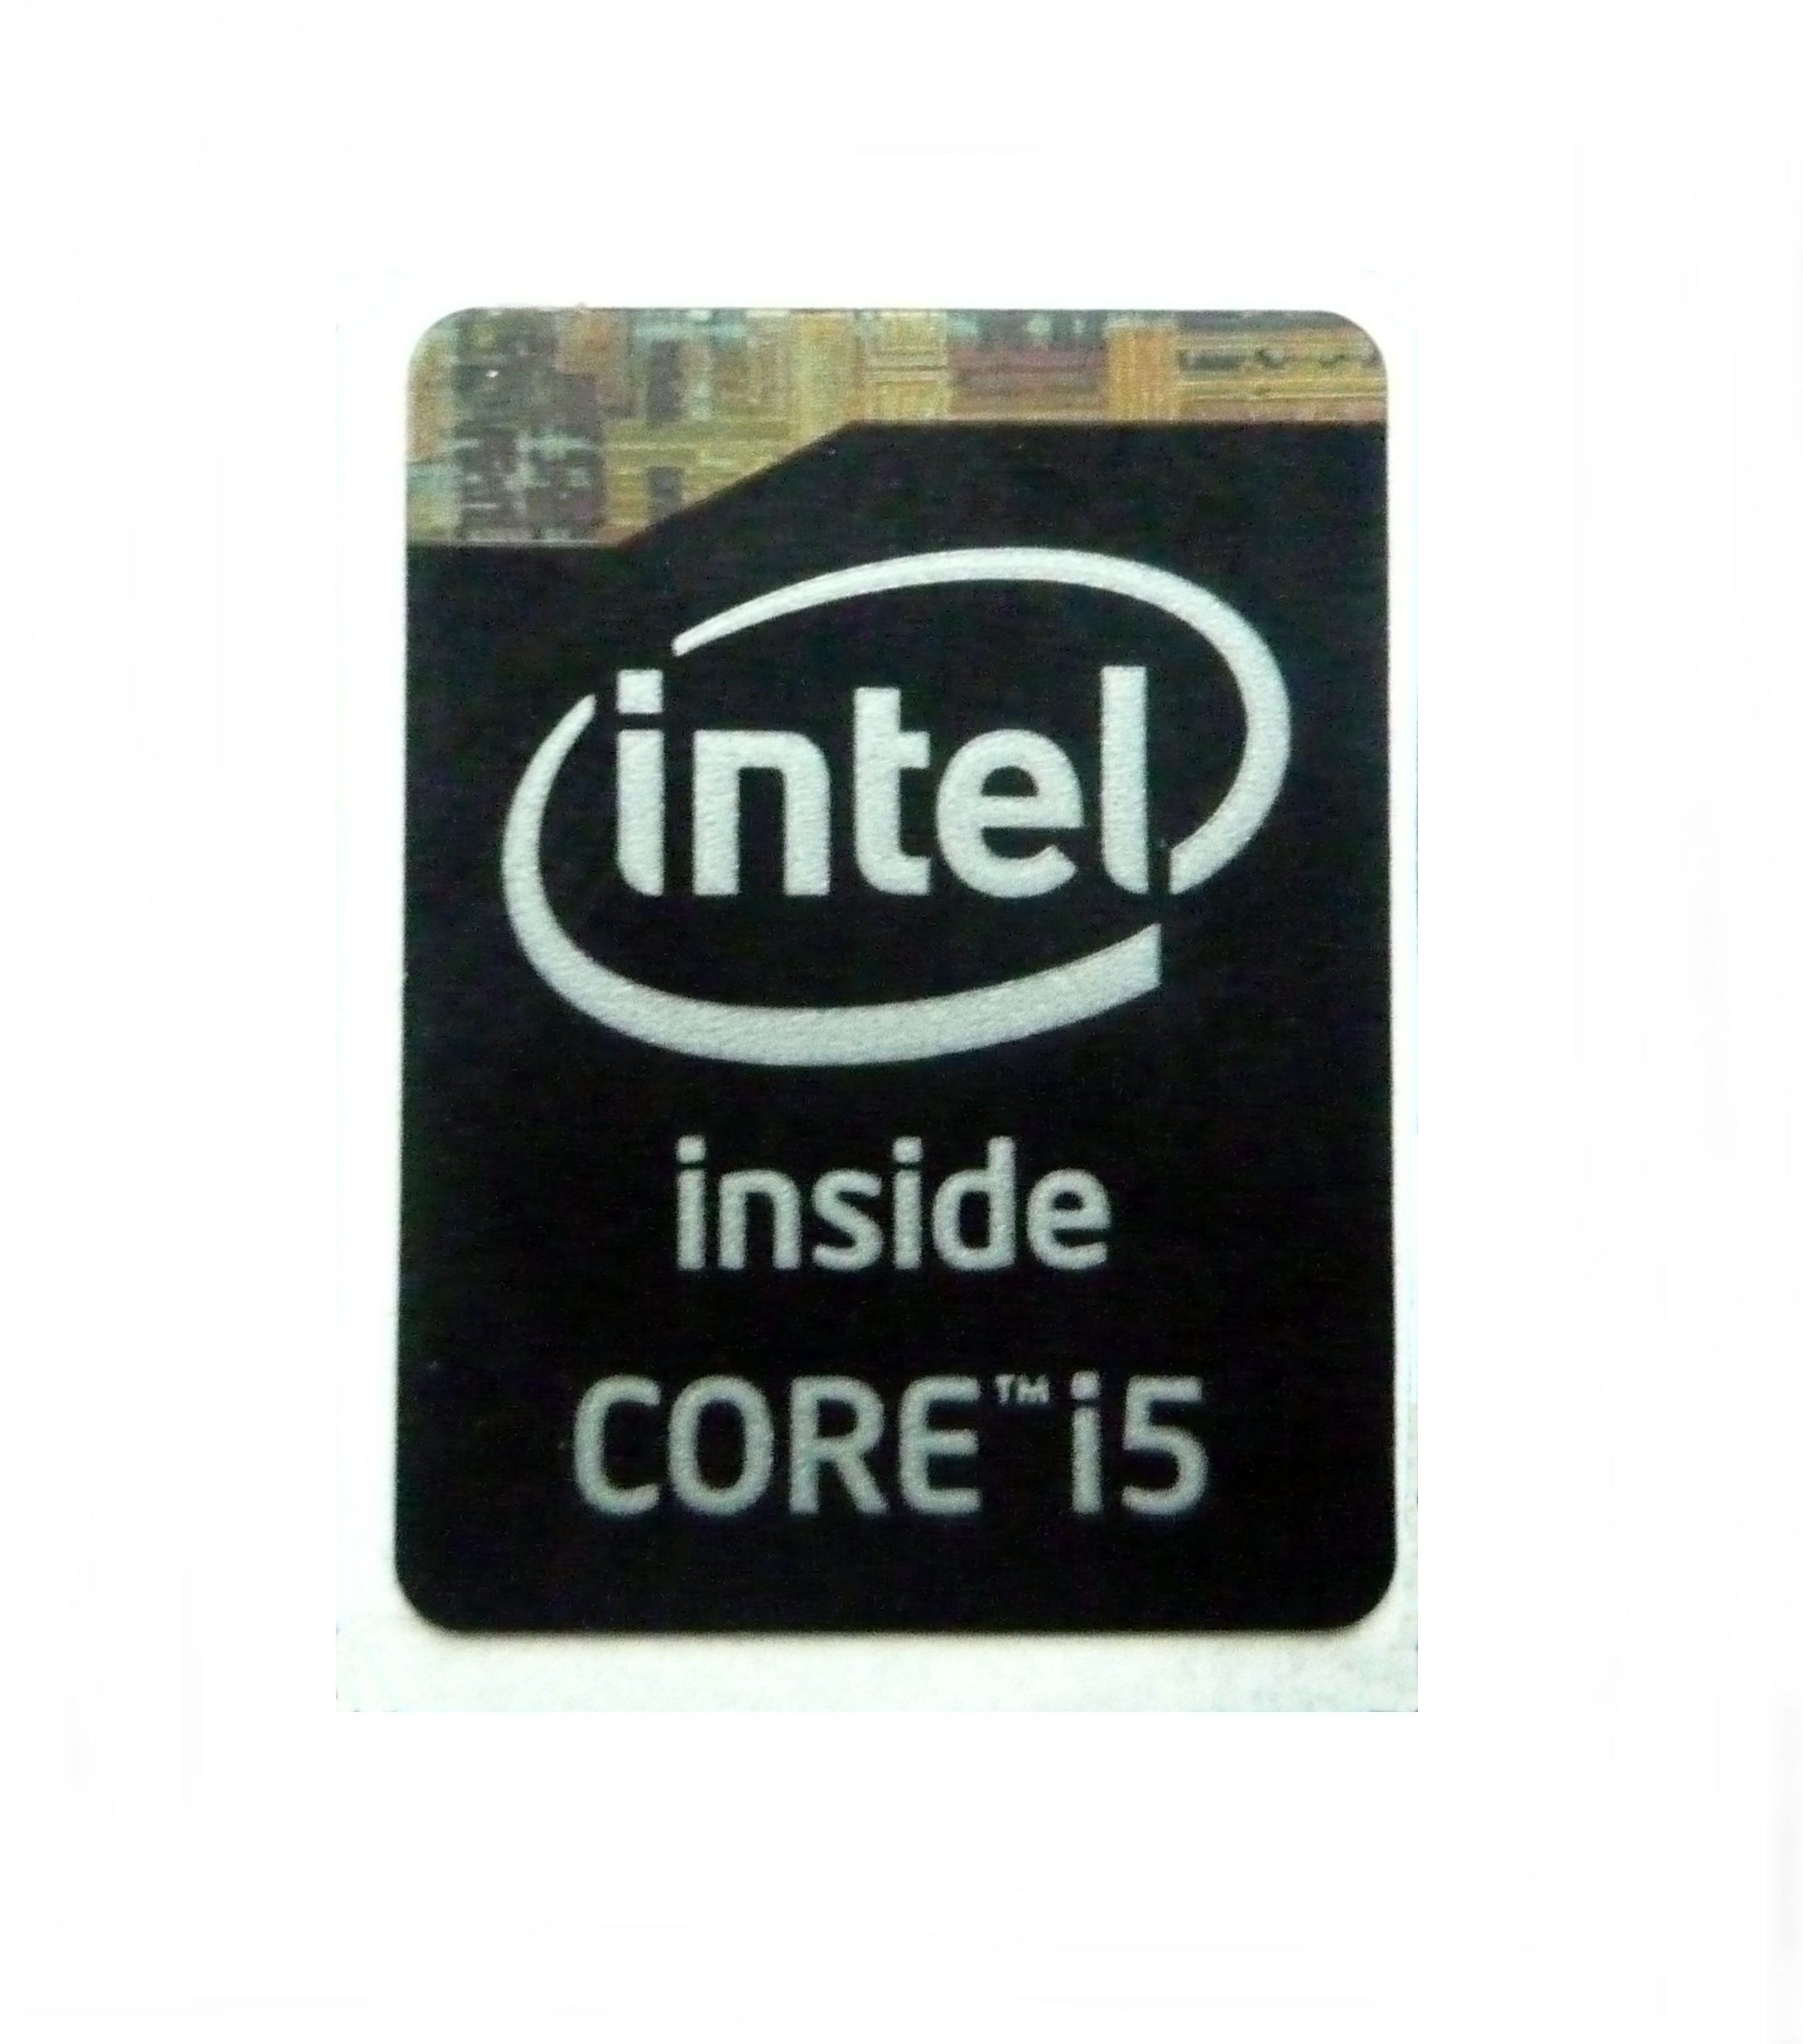 Наклейки intel. Наклейка Intel Core i7 inside. Процессор Intel Core i5 inside. Intel Core i5 inside наклейка. Наклейка Intel Core i5 11 Gen.